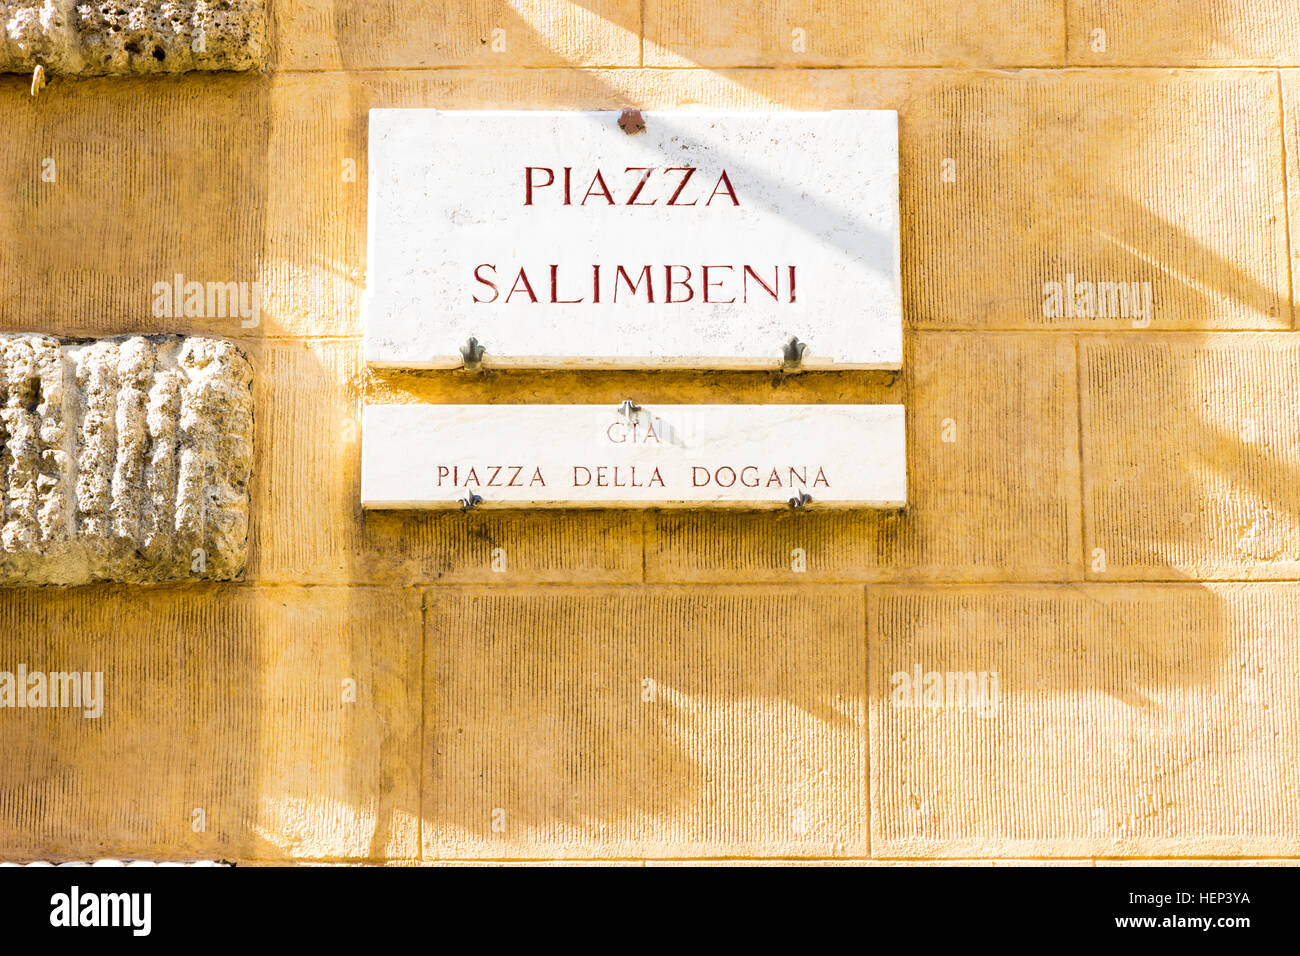 Sienne, Italie - 29 septembre 2016 : Palazzo Salimbeni, siège de la Monte dei Paschi di Siena bank Banque D'Images